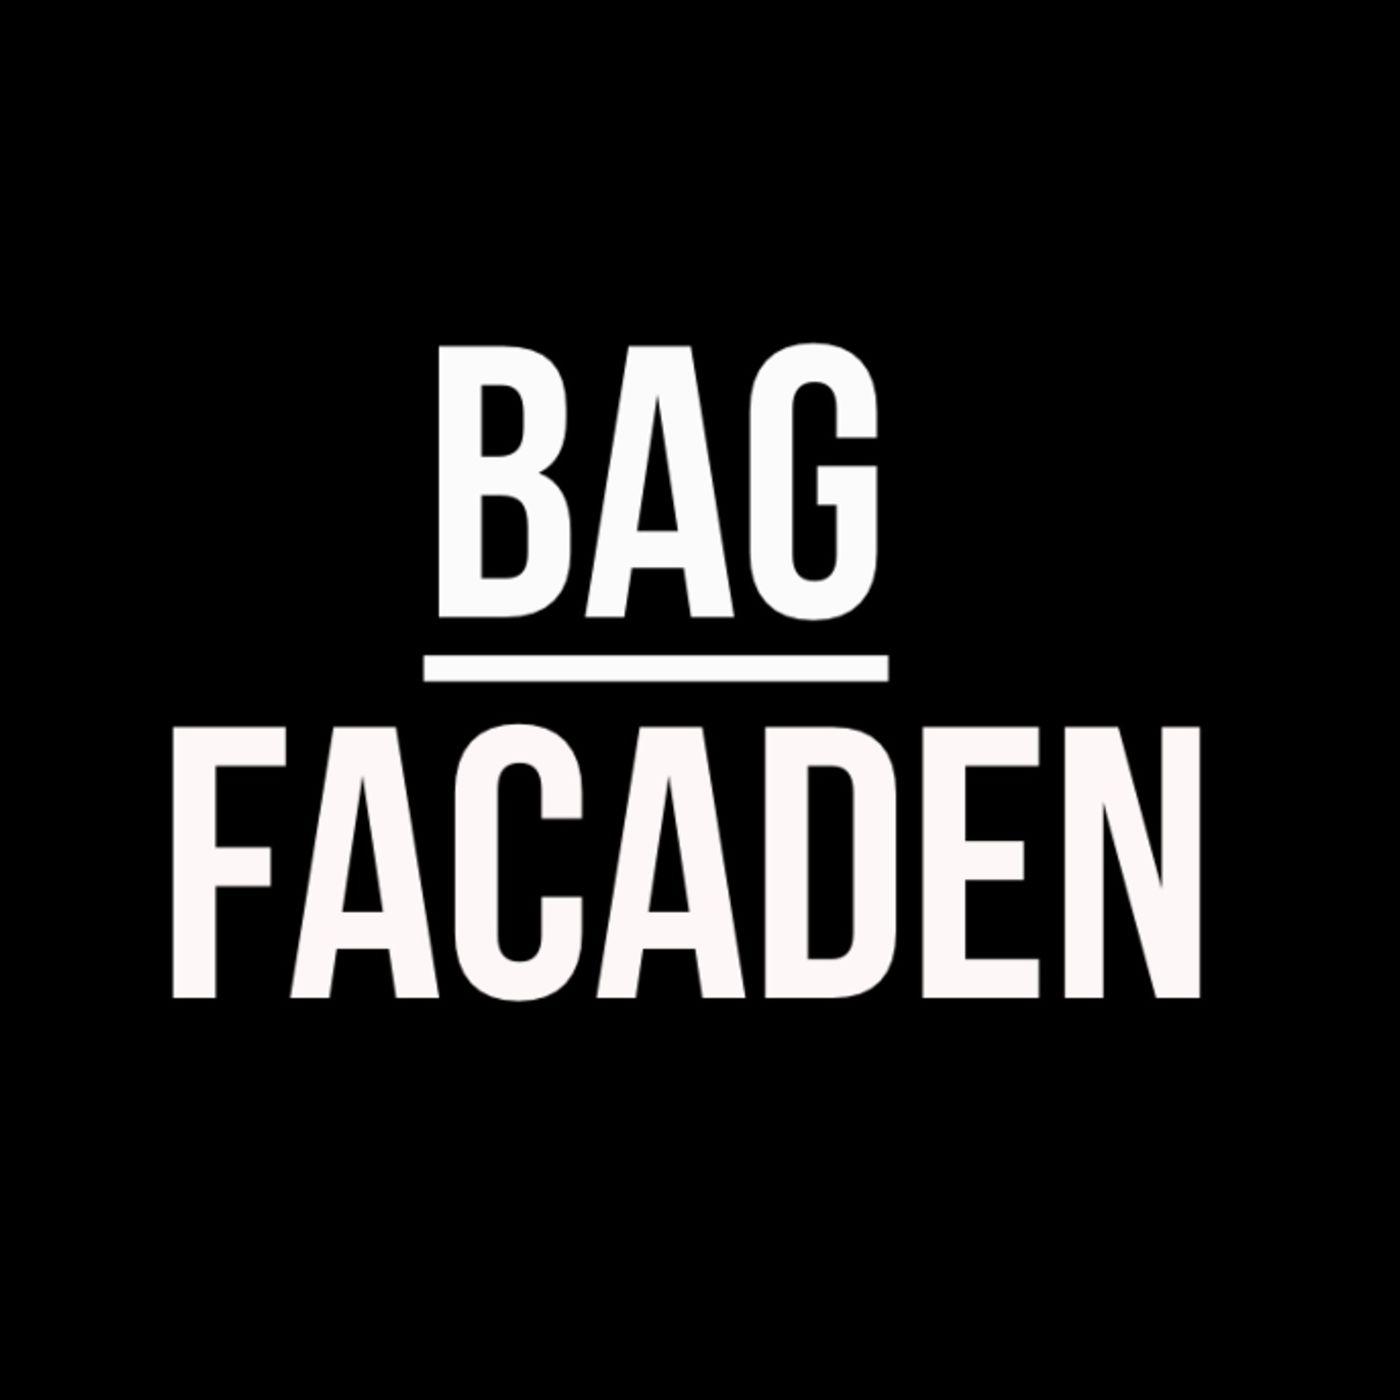 Bag Facaden